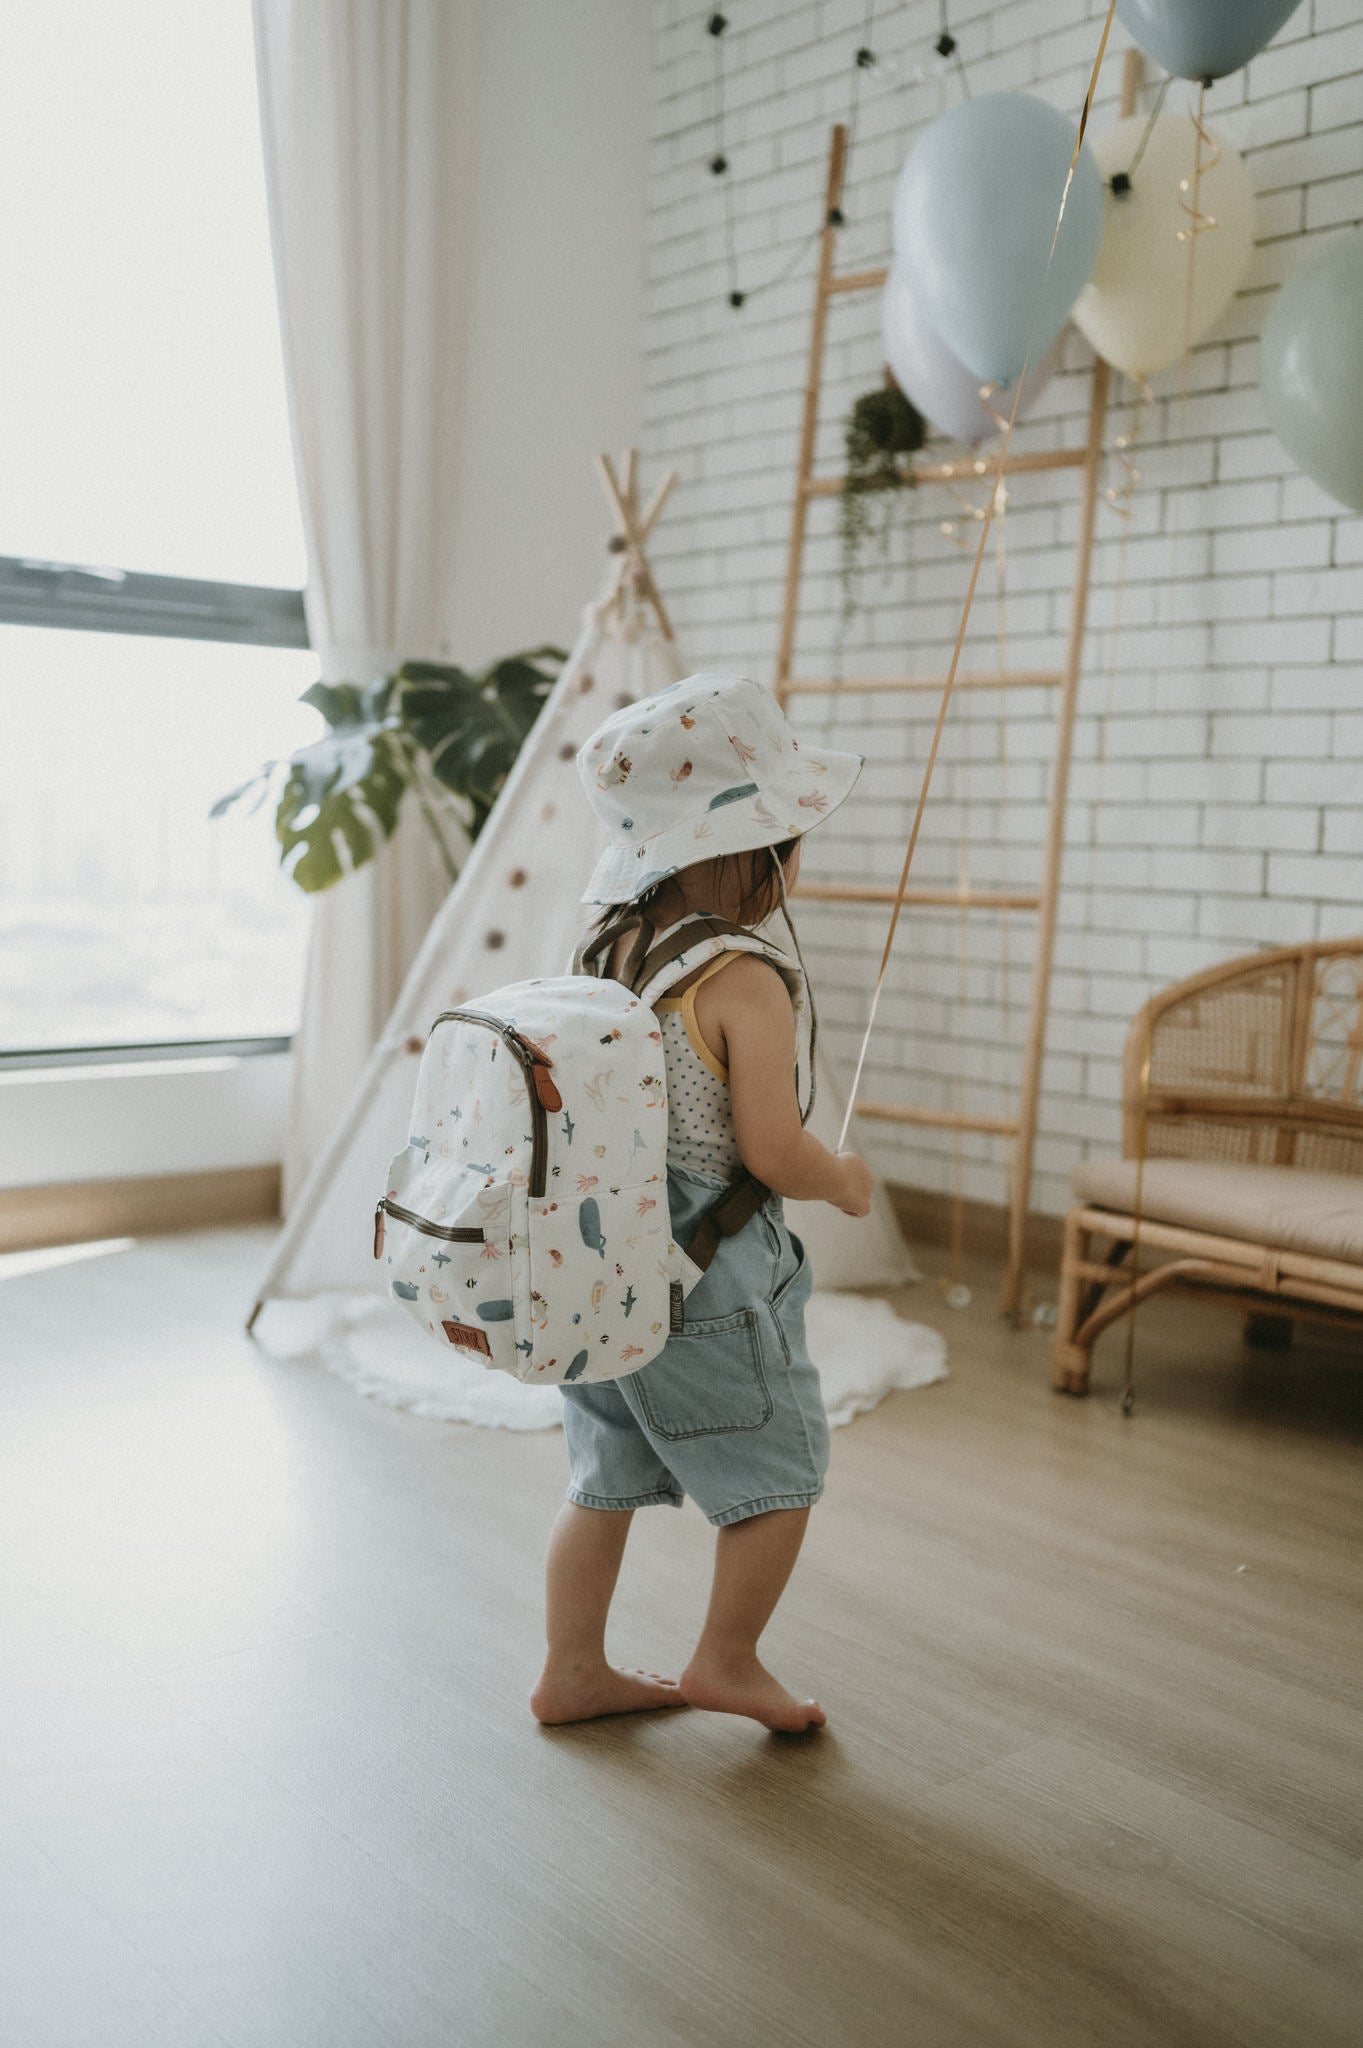 Storgē Backpack -Toddler